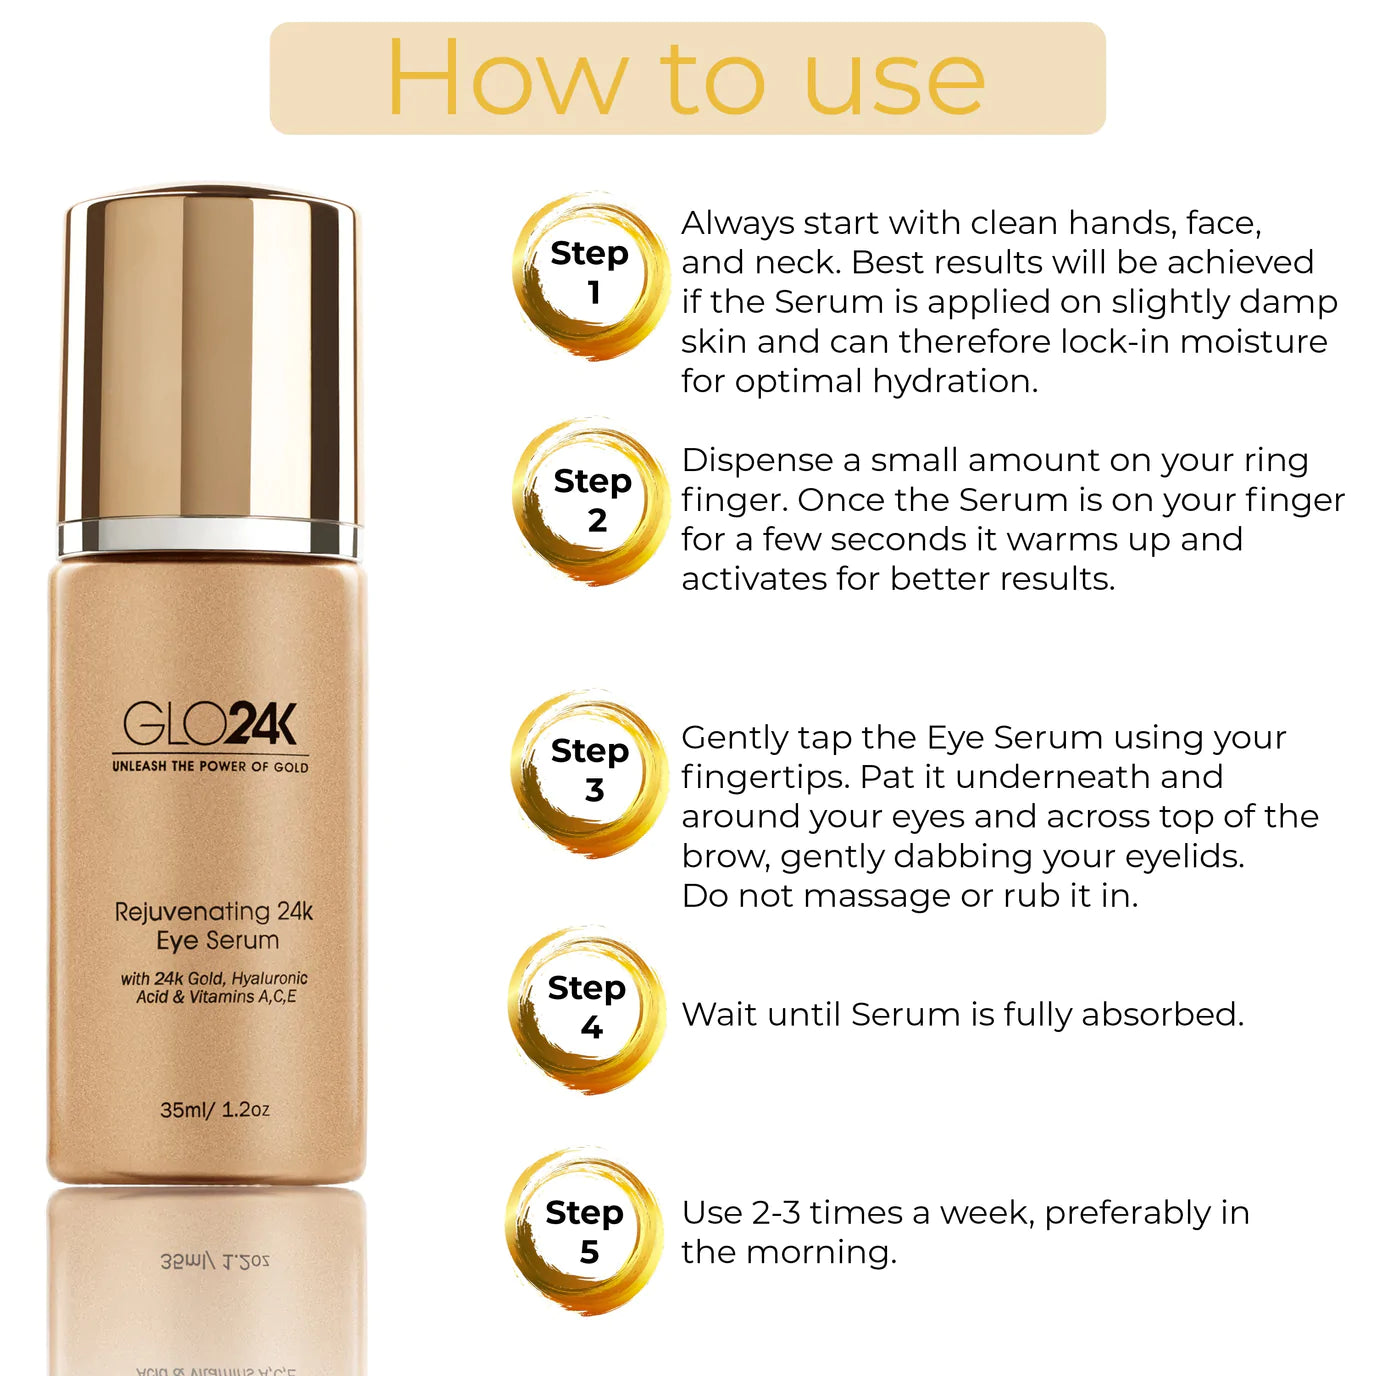 How to use GLO24K Rejuvenating 24k Eye Serum 